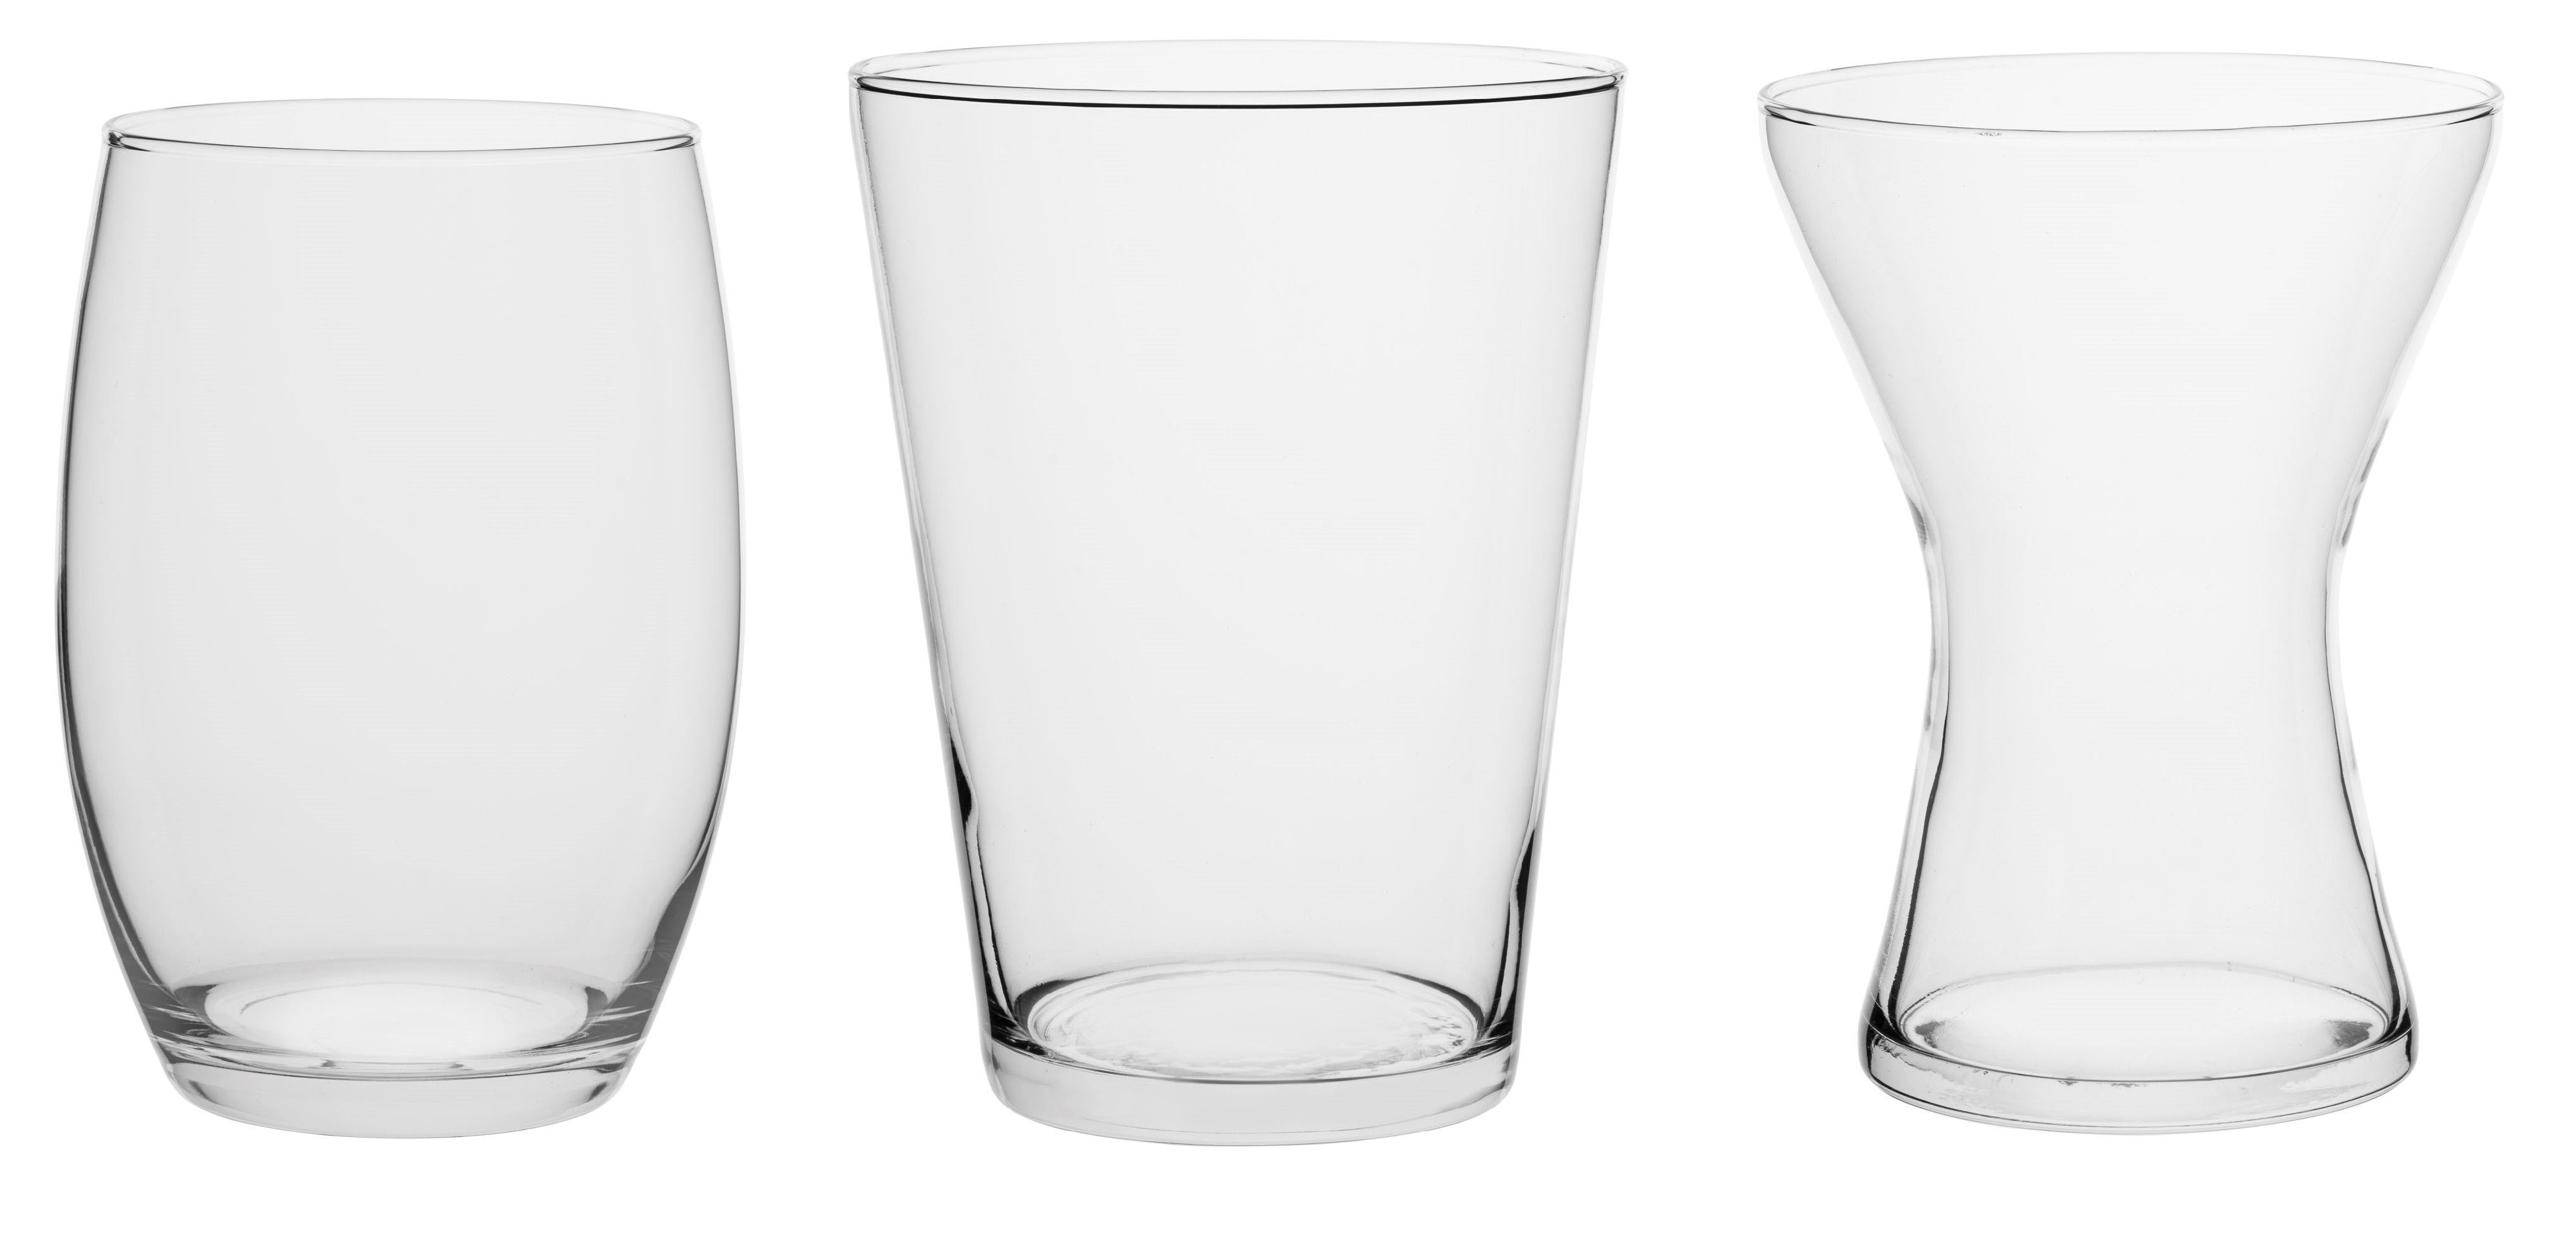 GlasArt Dekovase 2er SET klarglas 2x drei Klarglas nach St., 20cm aus Bestehend Vase Wahl), handgefertigt 2 (2er-Set, gleiche Auswahl Formen konisch Dekovasen hoch, 2, aus bauchig aus trapez